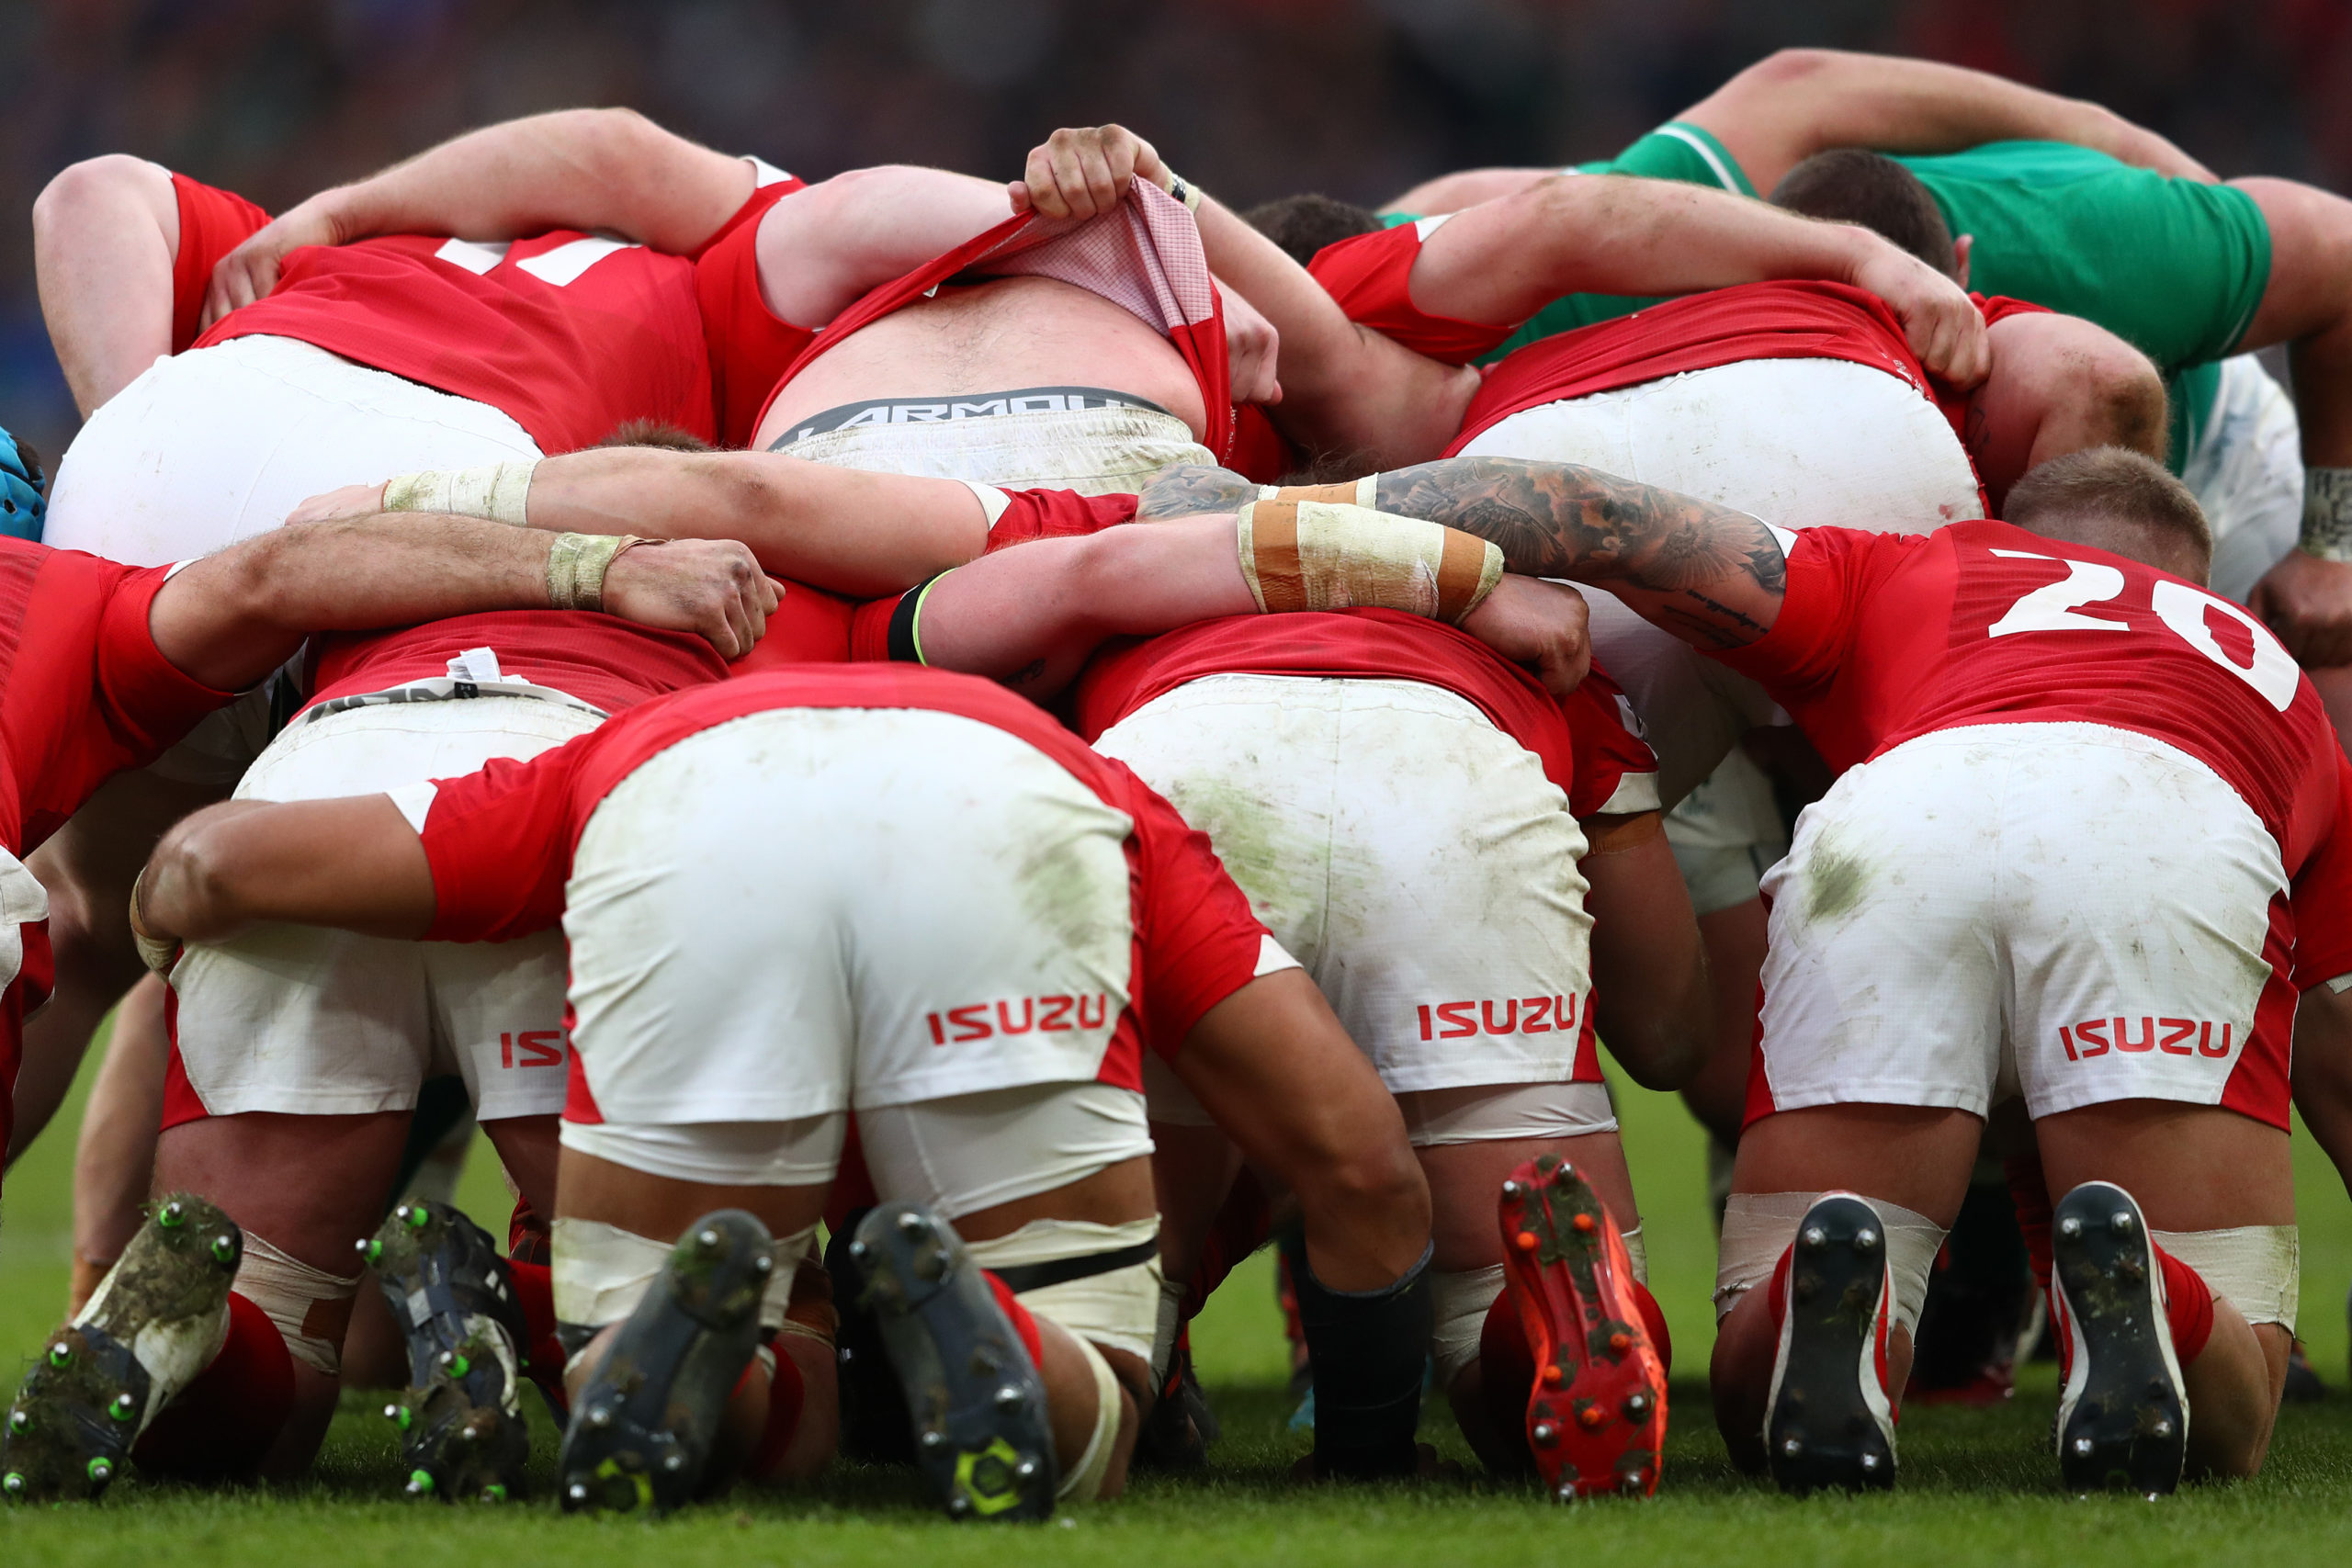 La organización de rugby de Gales enfrenta las acusaciones de homofobia y racismo